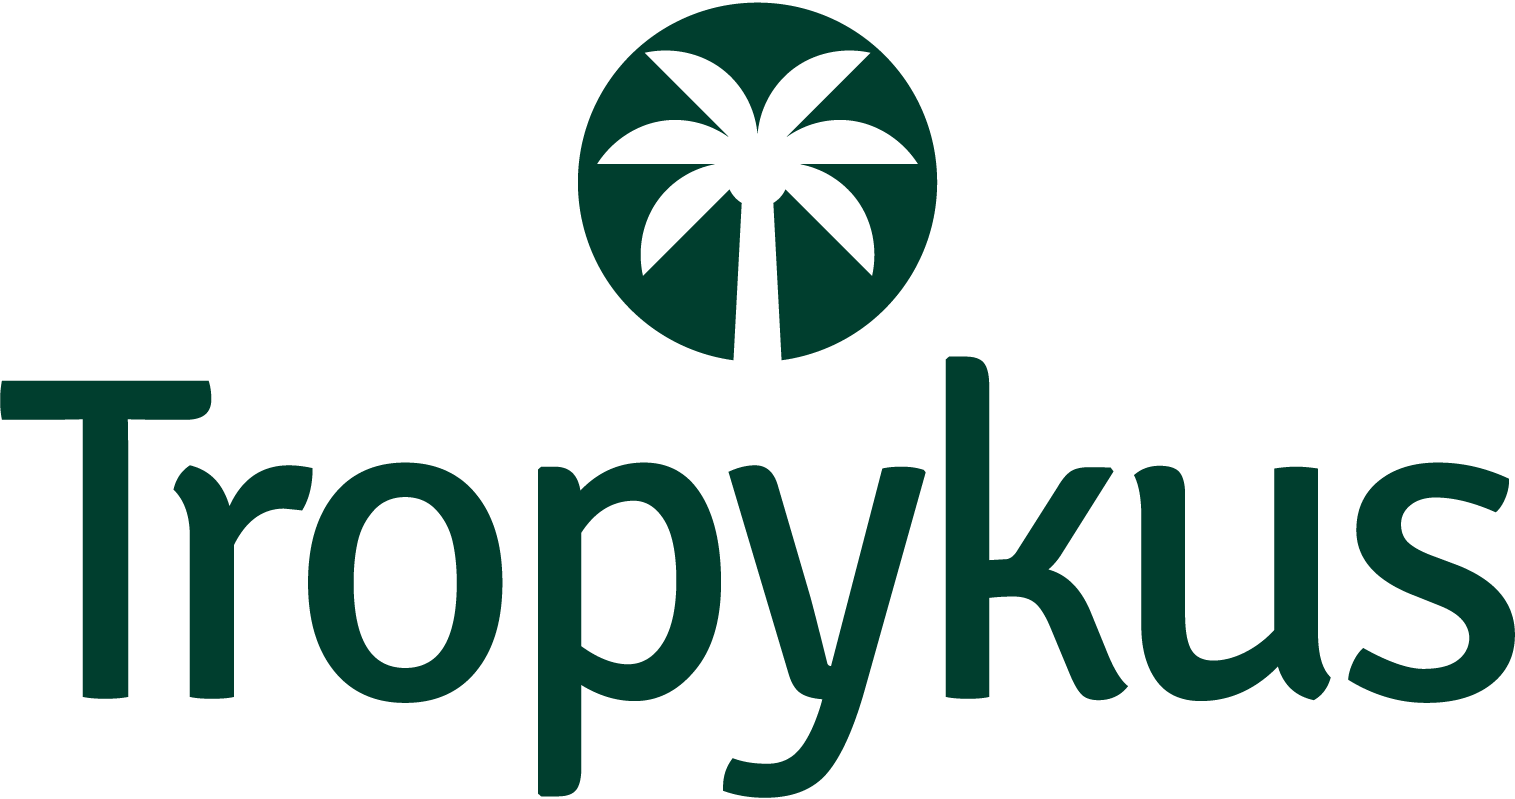 Tropykus Finance se une al grupo de empresas,  Qredo, Api3, Open Bank Project y RSK, para construir los servicios financieros del futuro